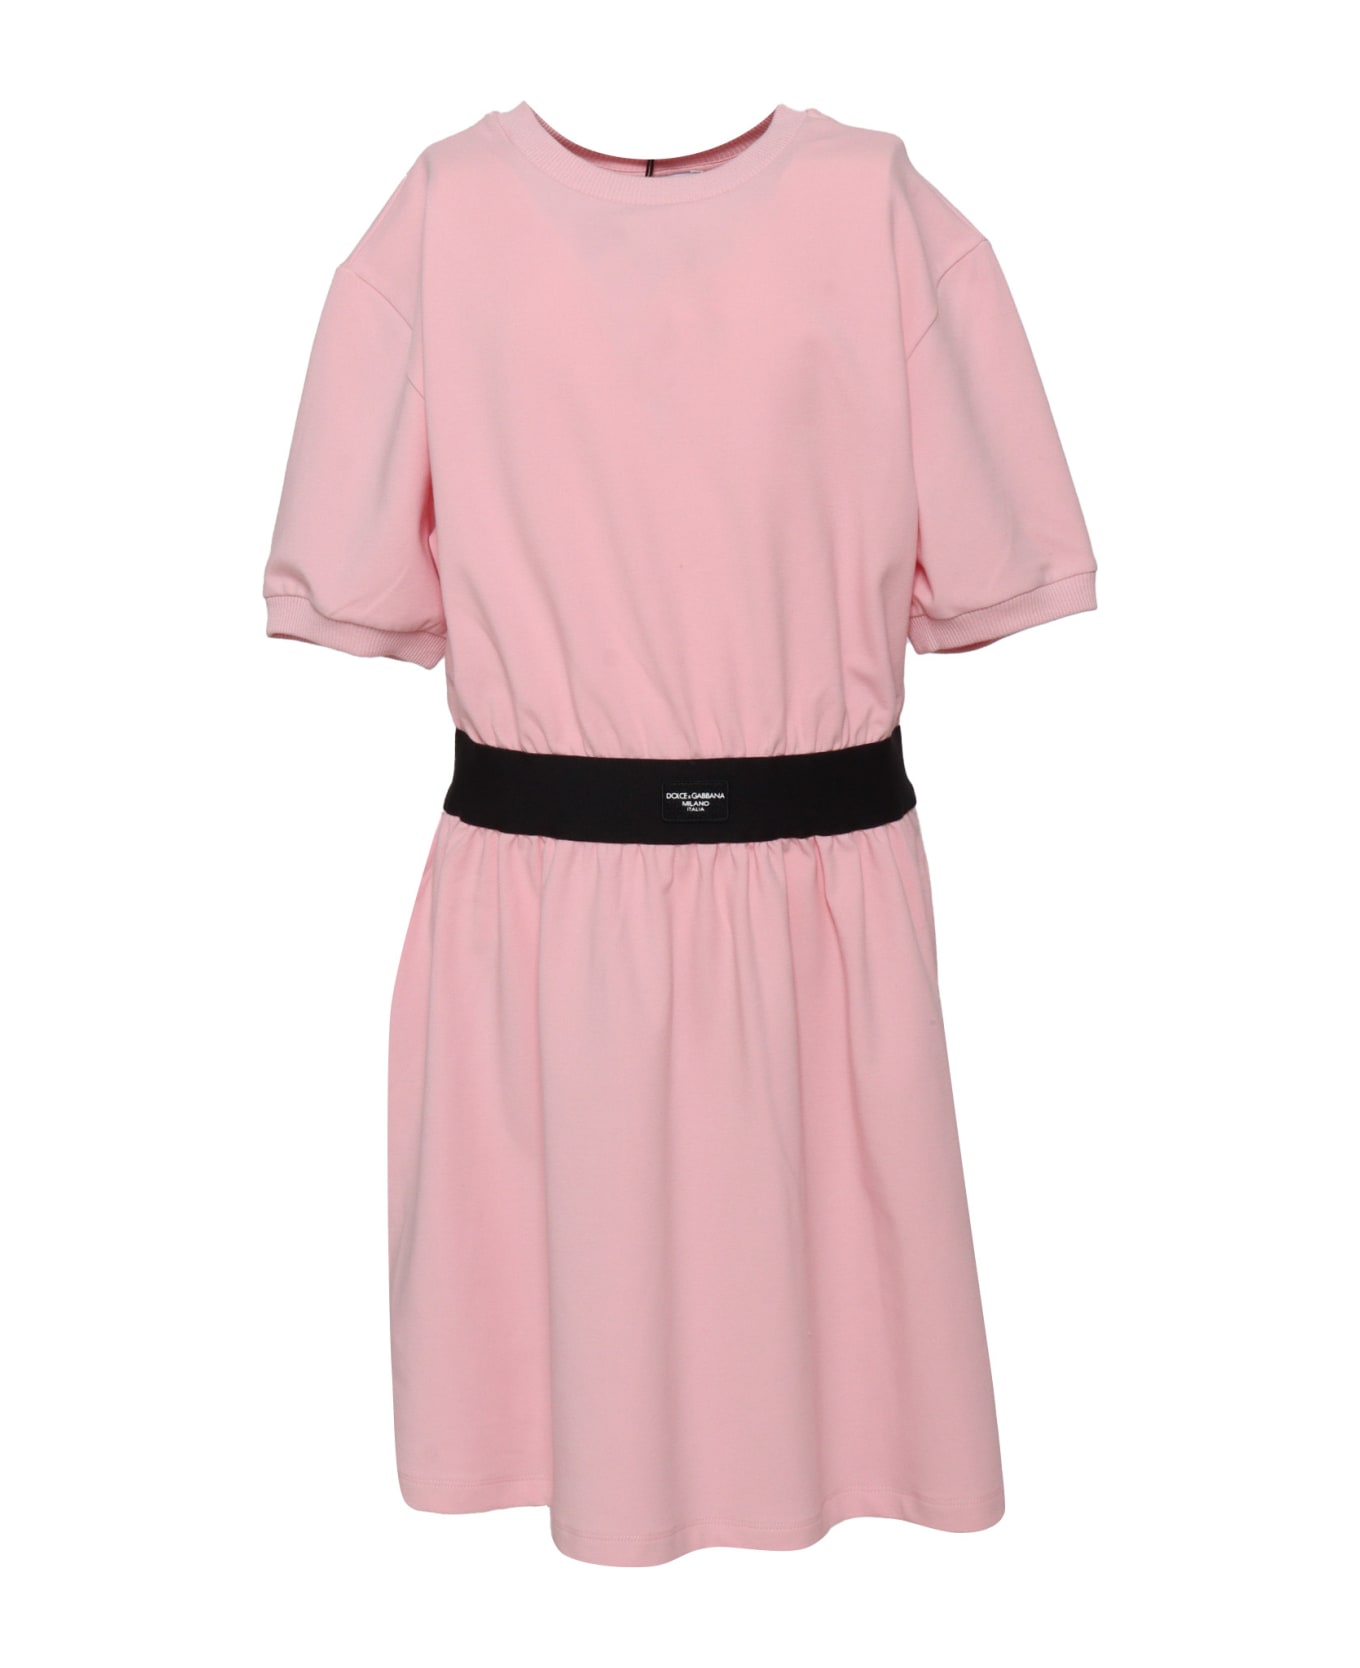 Dolce & Gabbana D&g Short Sleeve Dress - PINK